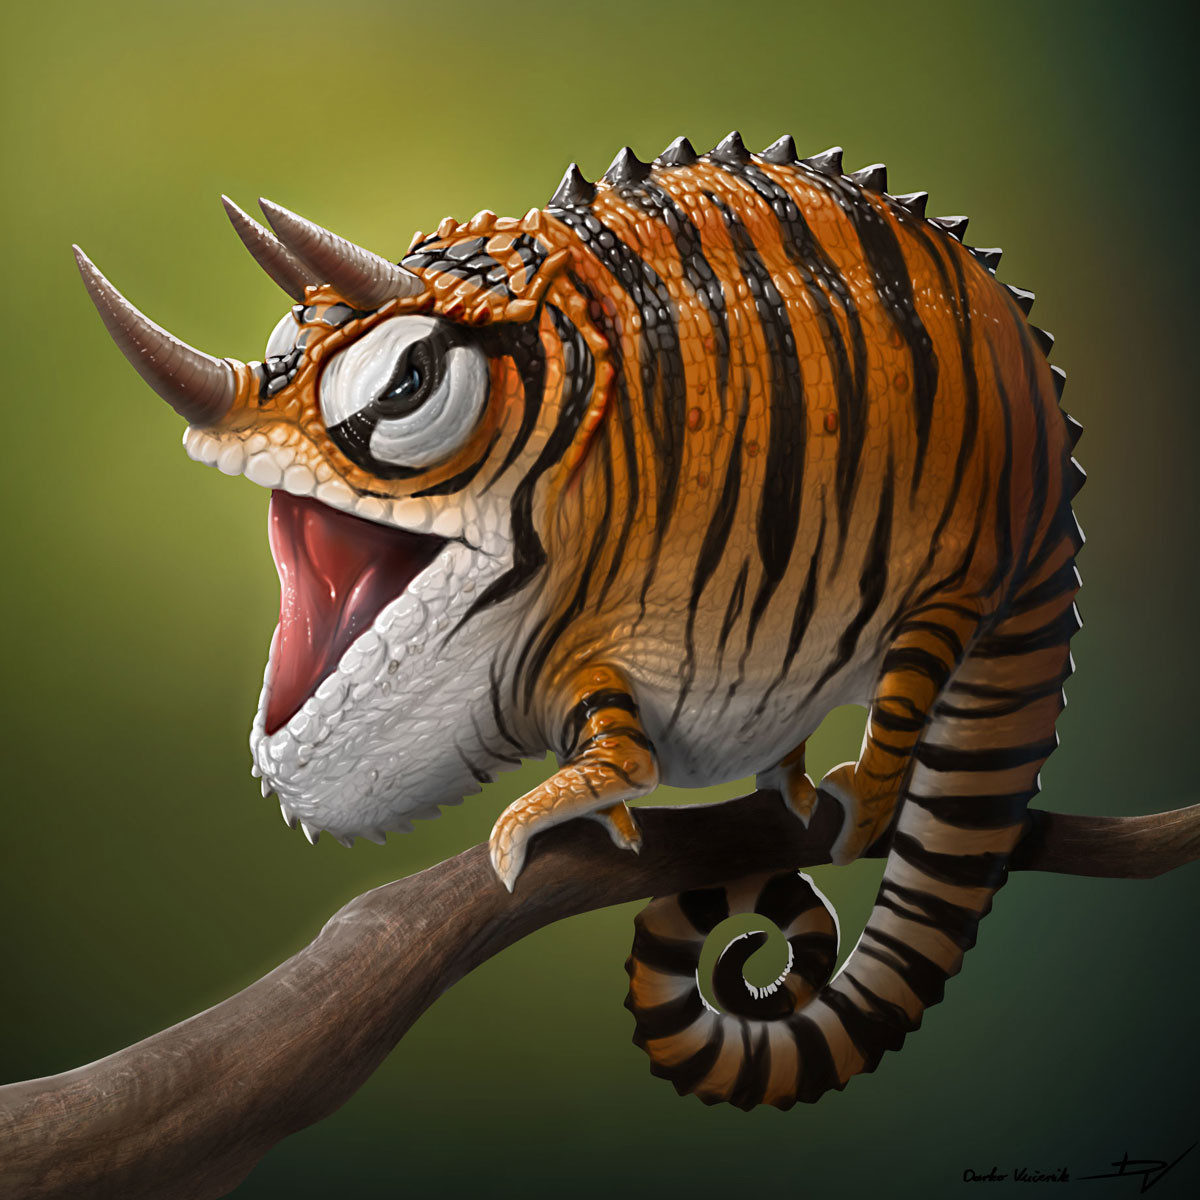 ArtStation - Tiger Chameleon, Darko Vucenik